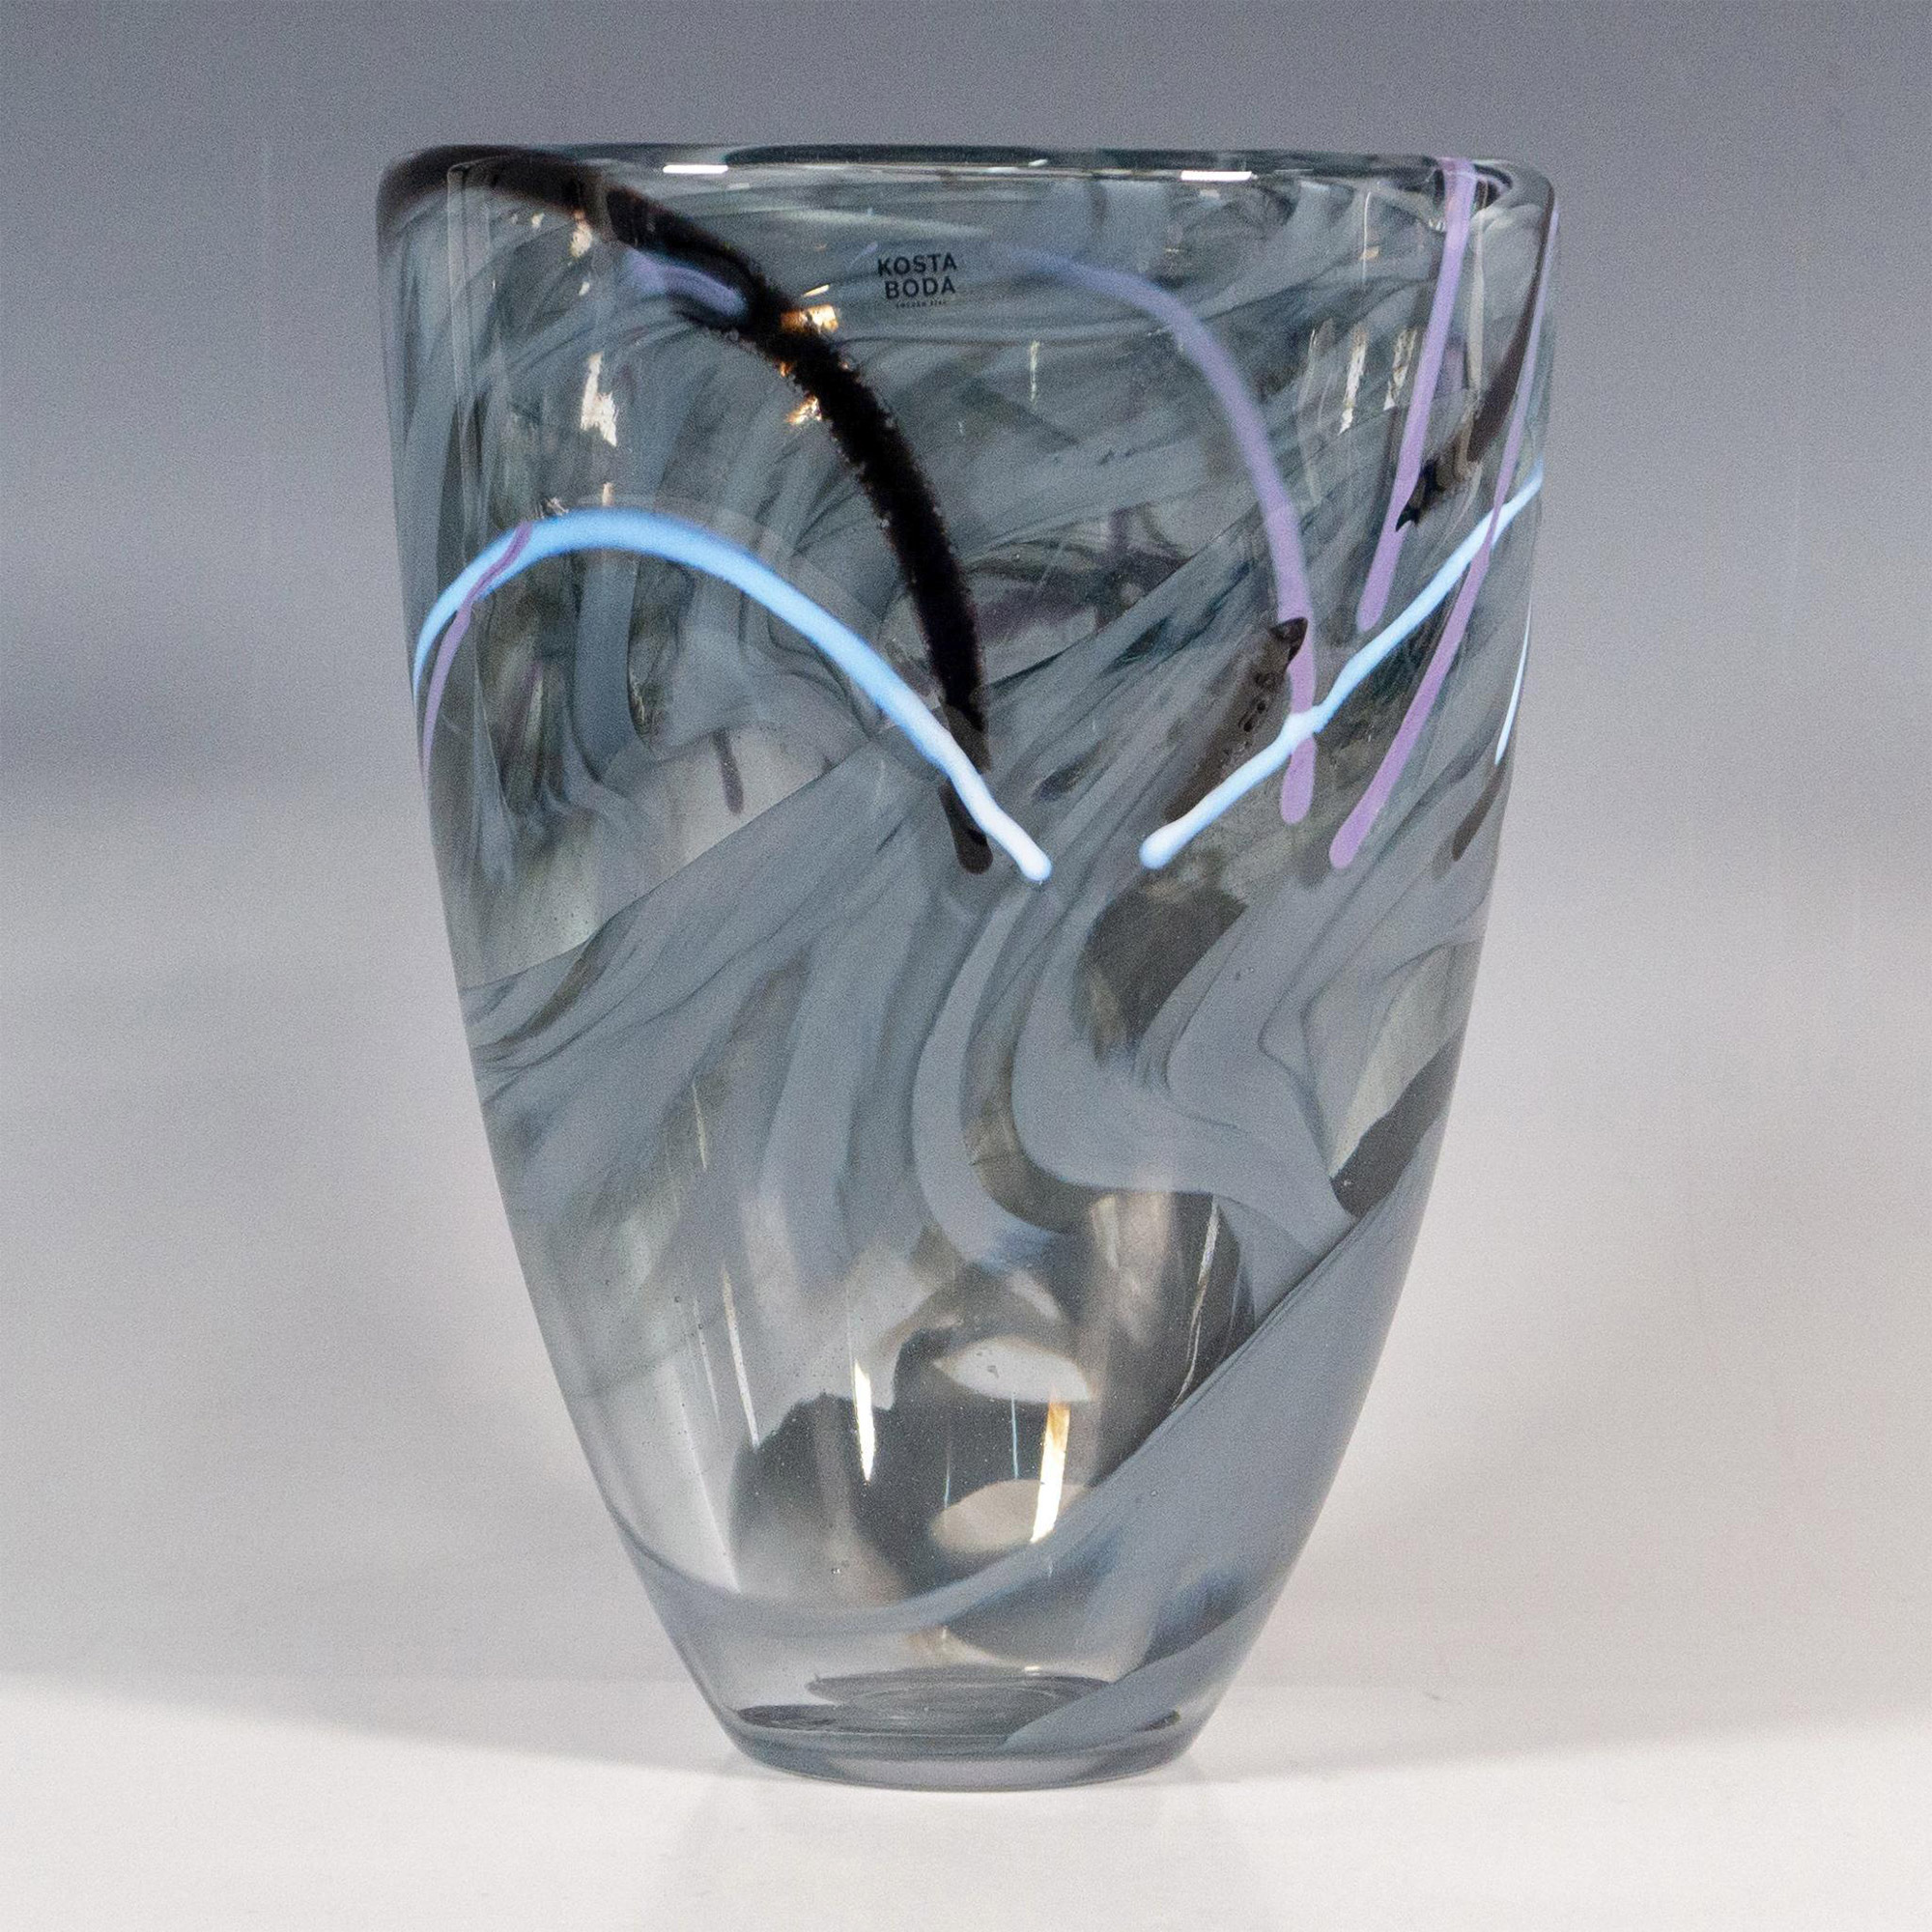 Kosta Boda by Anna Ehrner Glass Vase, Contrast - Image 2 of 5